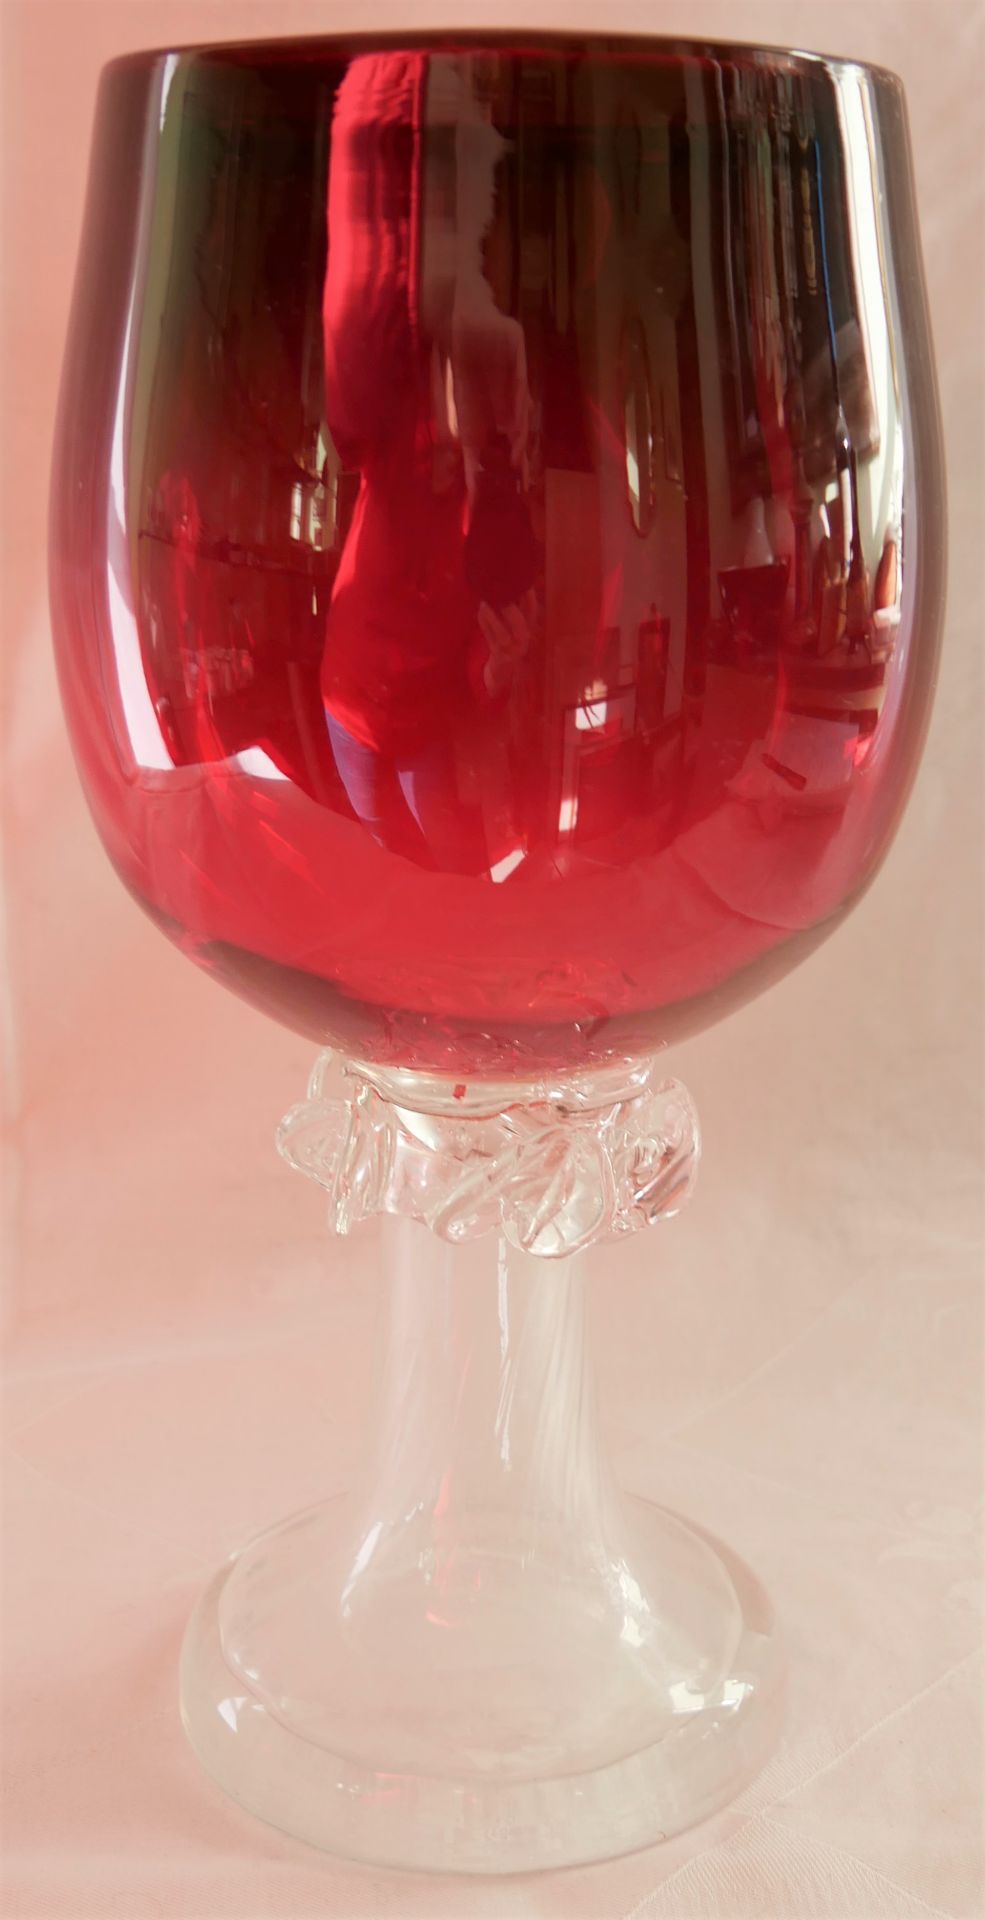 großes 2 farbiges Murano Glas in den farben weiß und rot. Höhe ca. 27 cm. Bitte besichtigen - Bild 2 aus 3